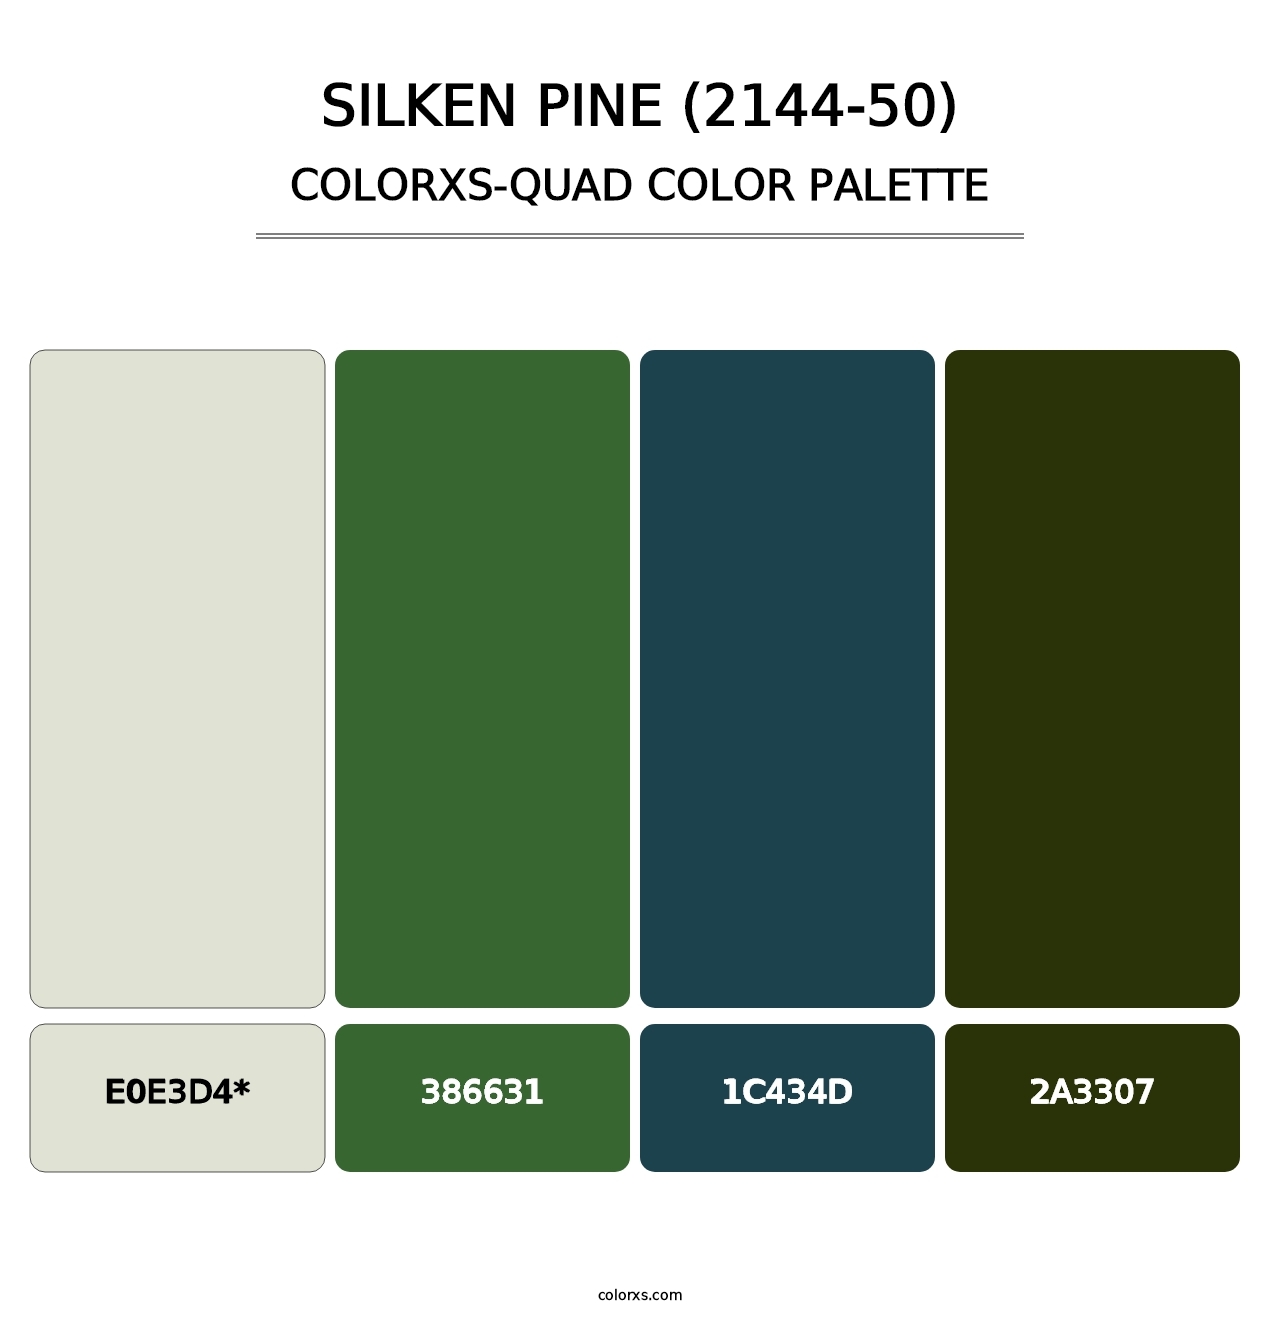 Silken Pine (2144-50) - Colorxs Quad Palette